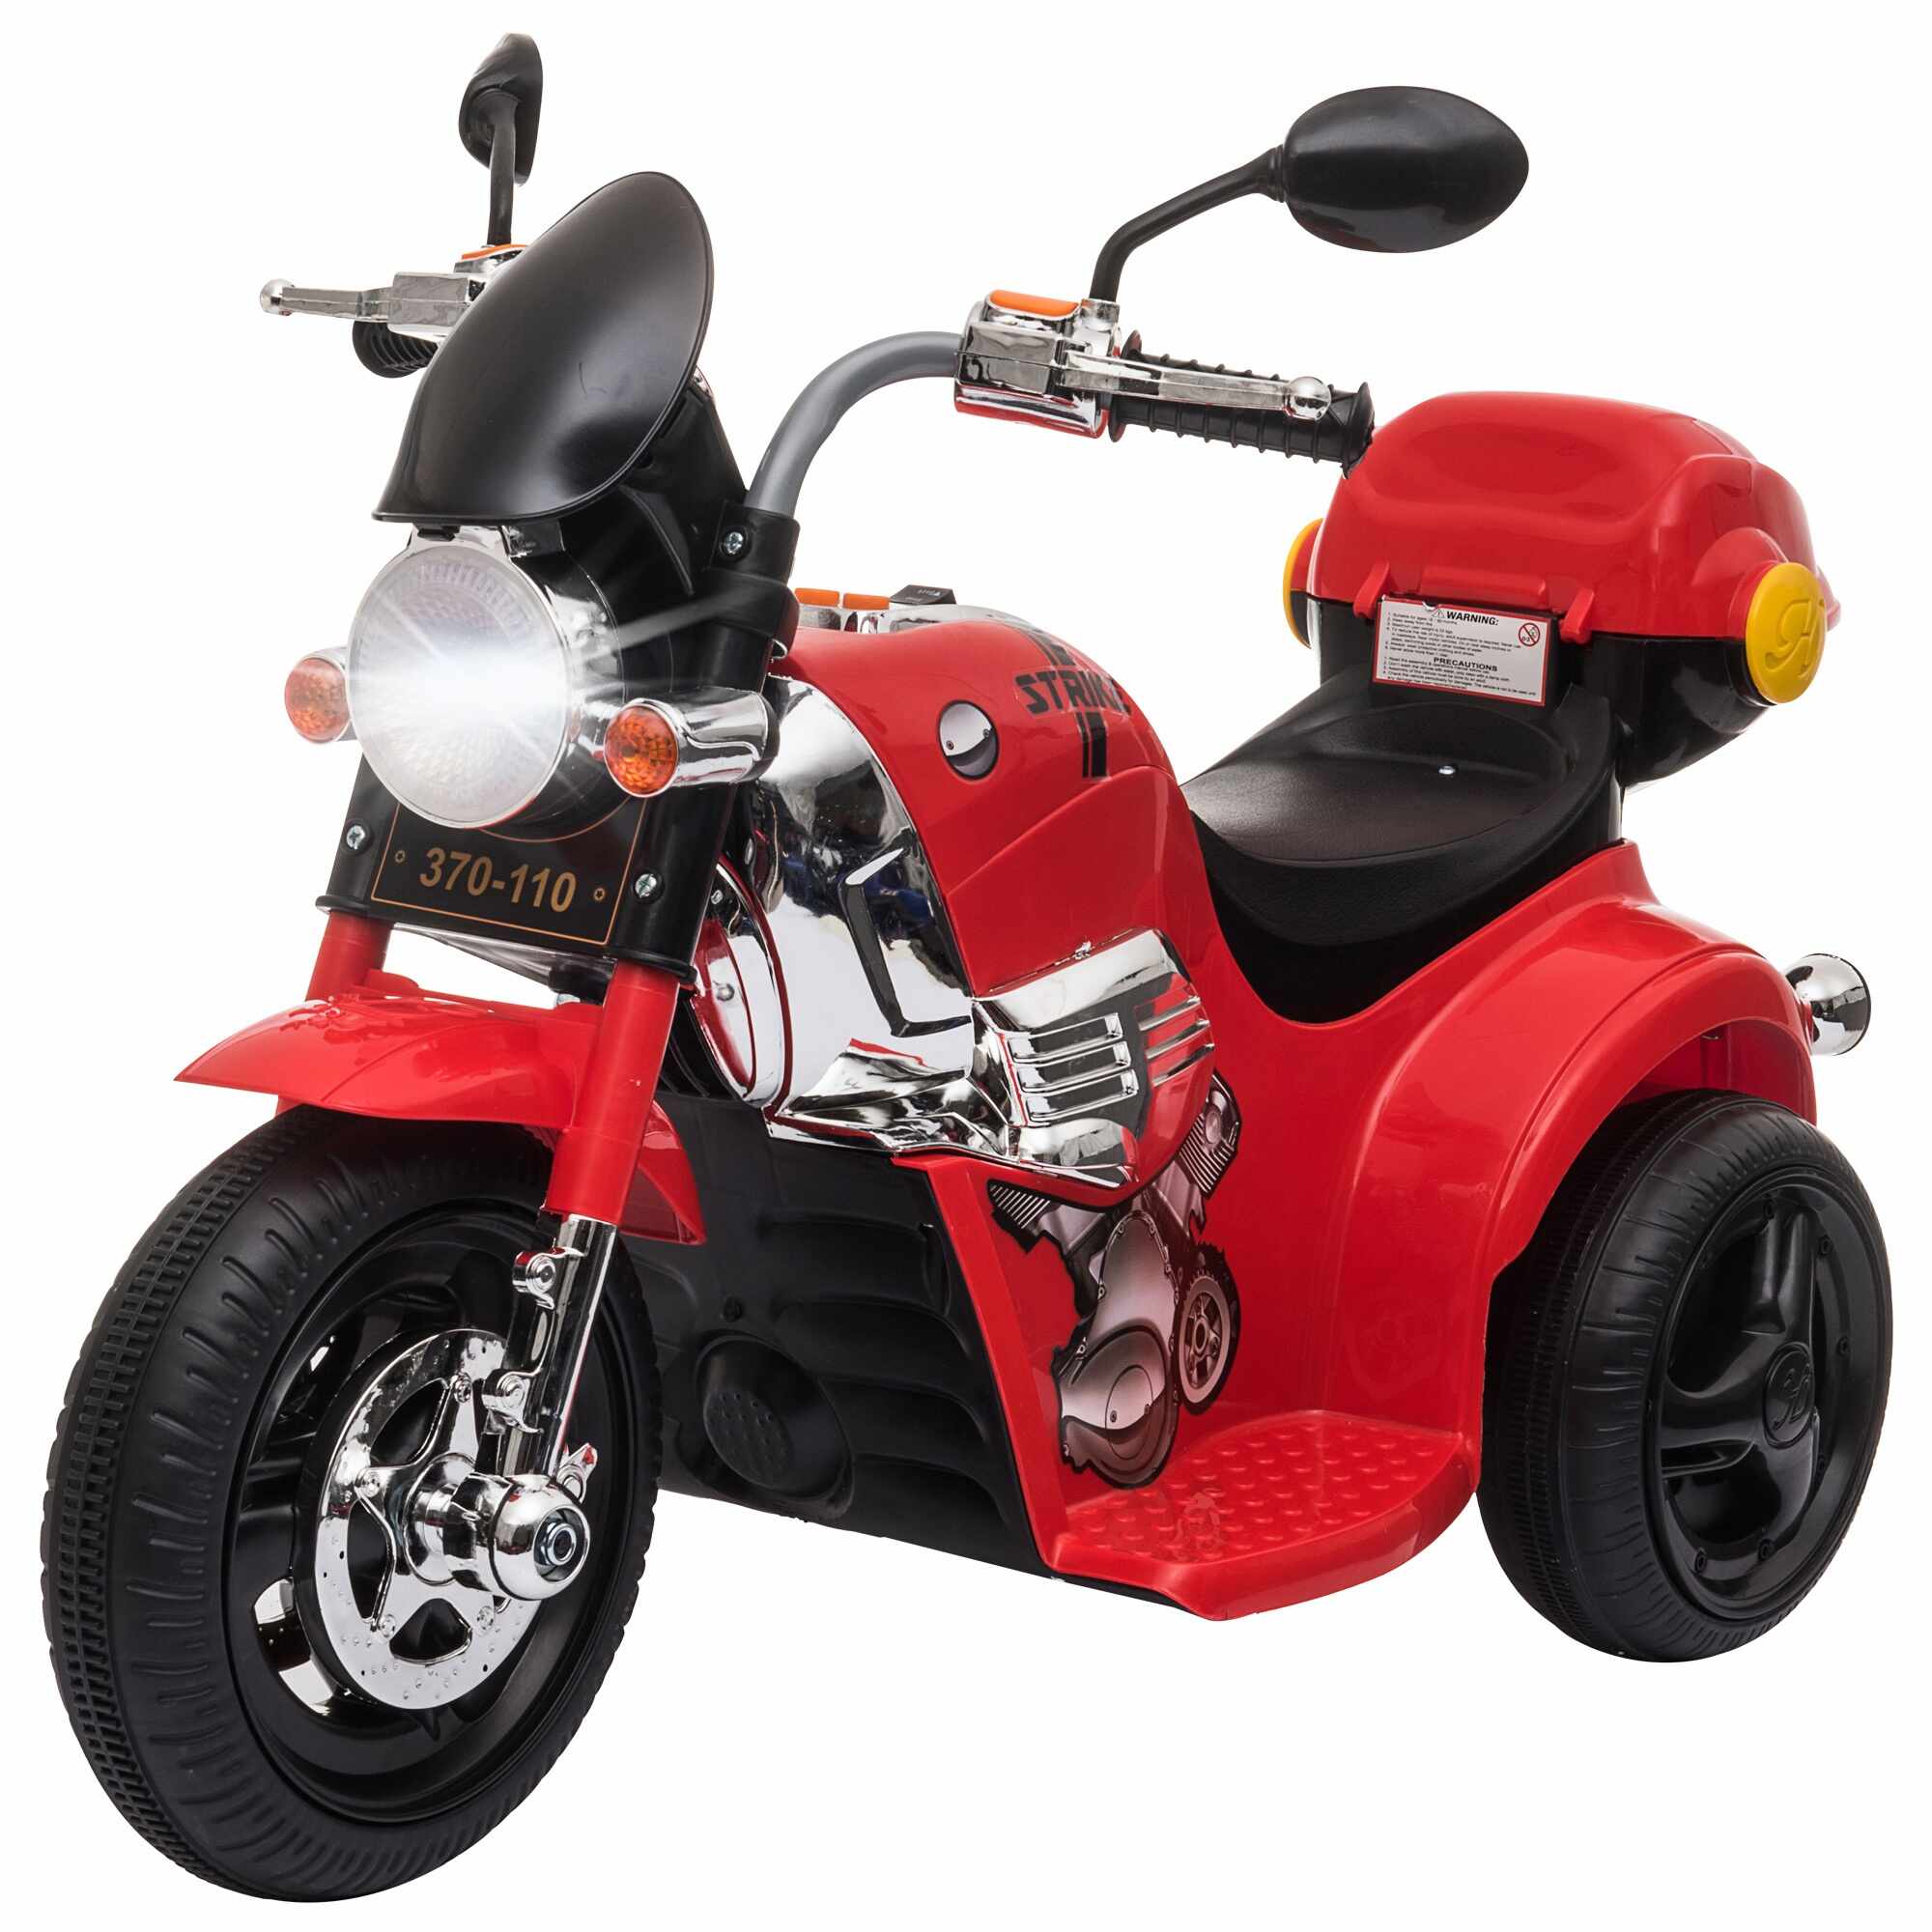 HomCom motocicleta electrica pentru copii, 87x46x54 cm, rosie | AOSOM RO